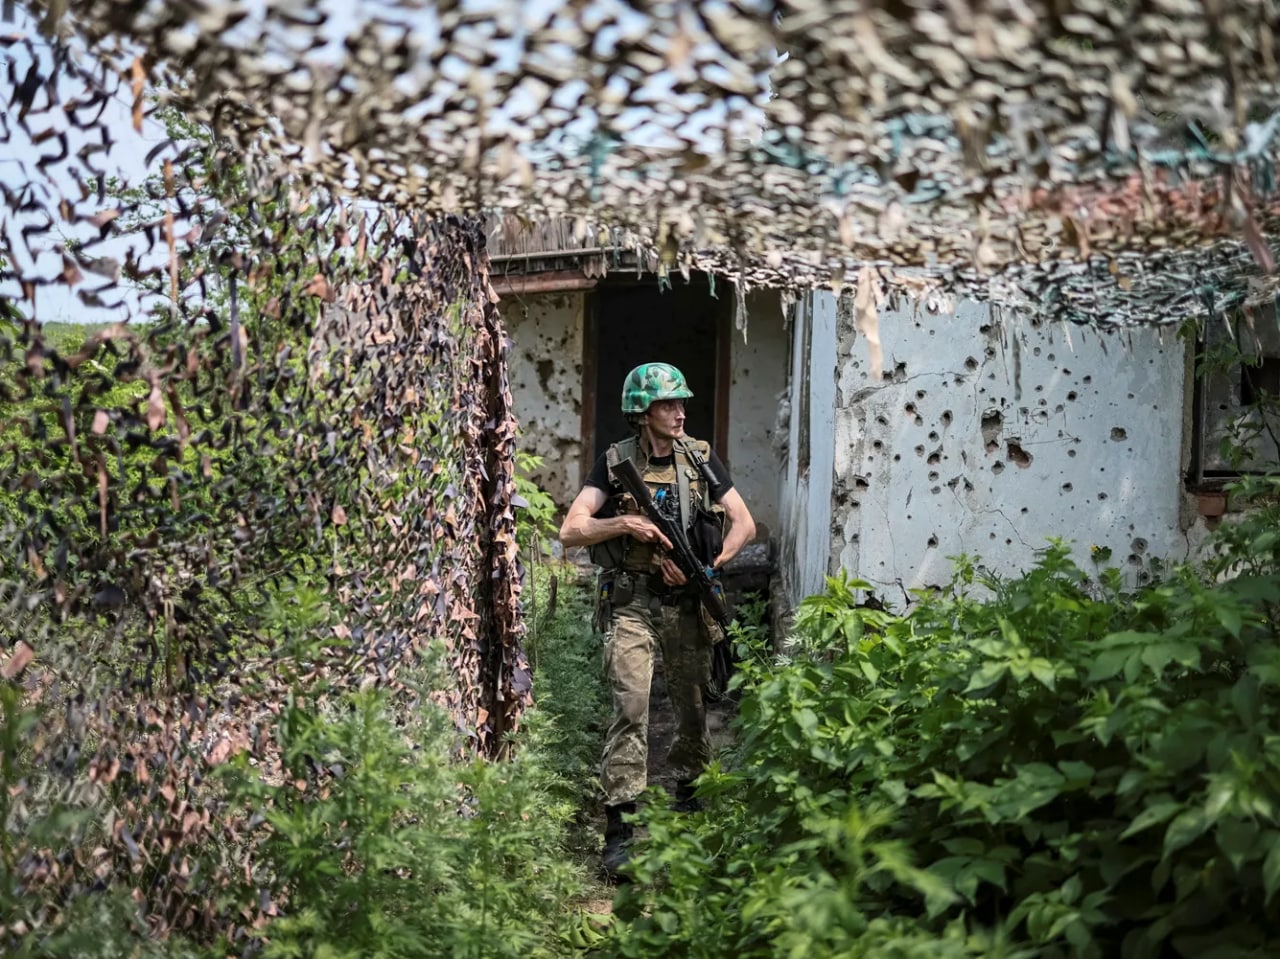 Bahmut yaqinidagi frontda ukrainalik askar — rus qo‘shinlari bu yo‘nalishda hujumni davom ettirmoqda, ammo shahar Ukraina nazorati ostida.